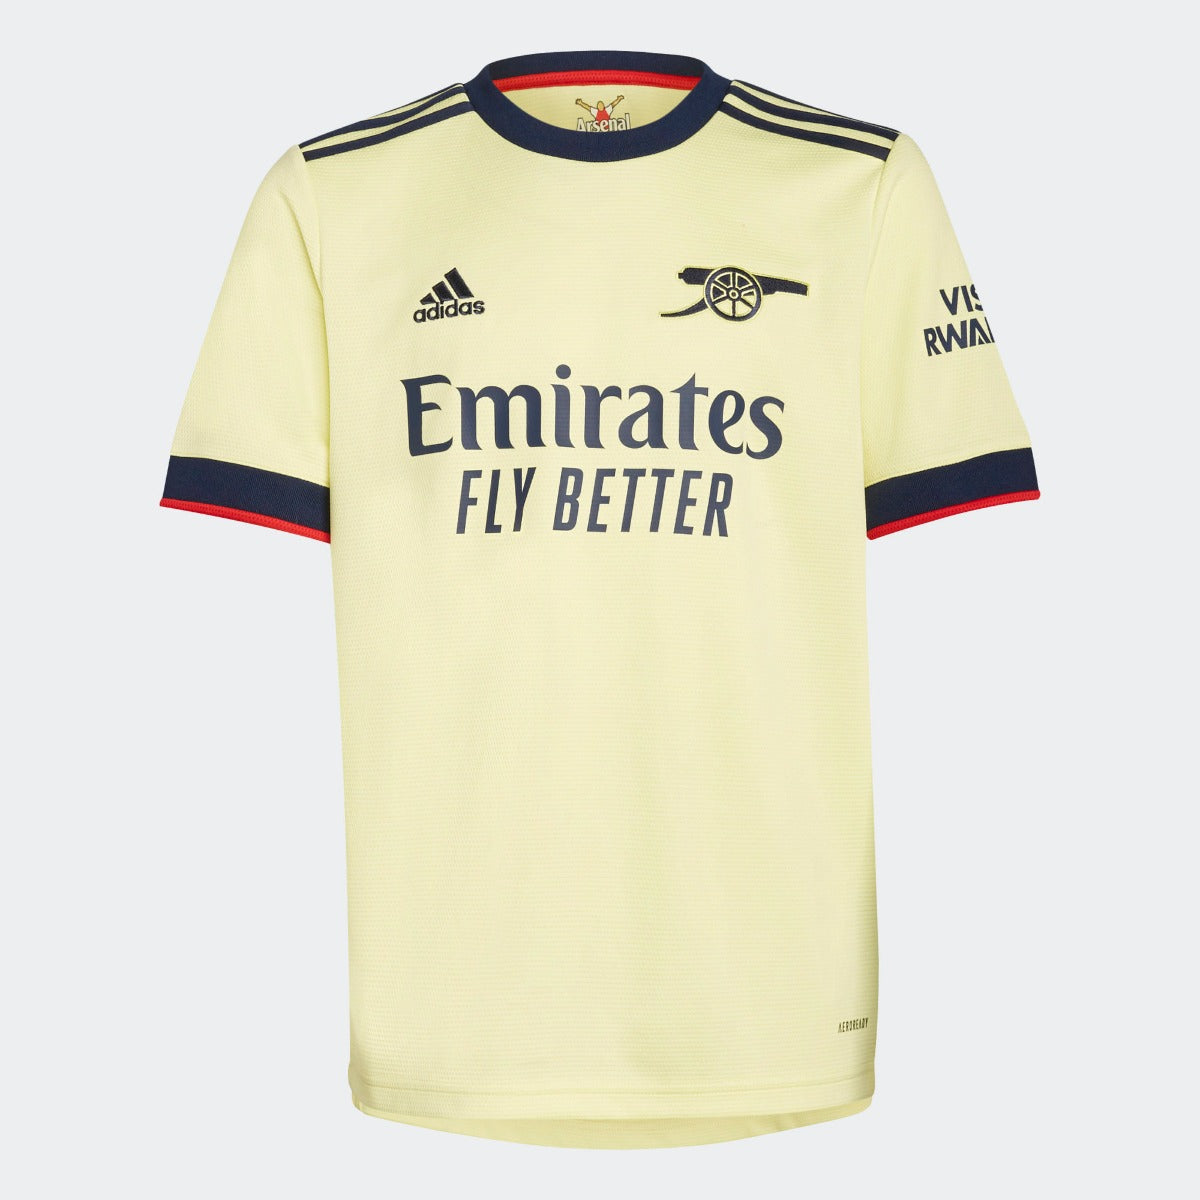 Adidas, Adidas 2021-22 Maglia da trasferta della gioventù dell'Arsenal - Perla Citrino